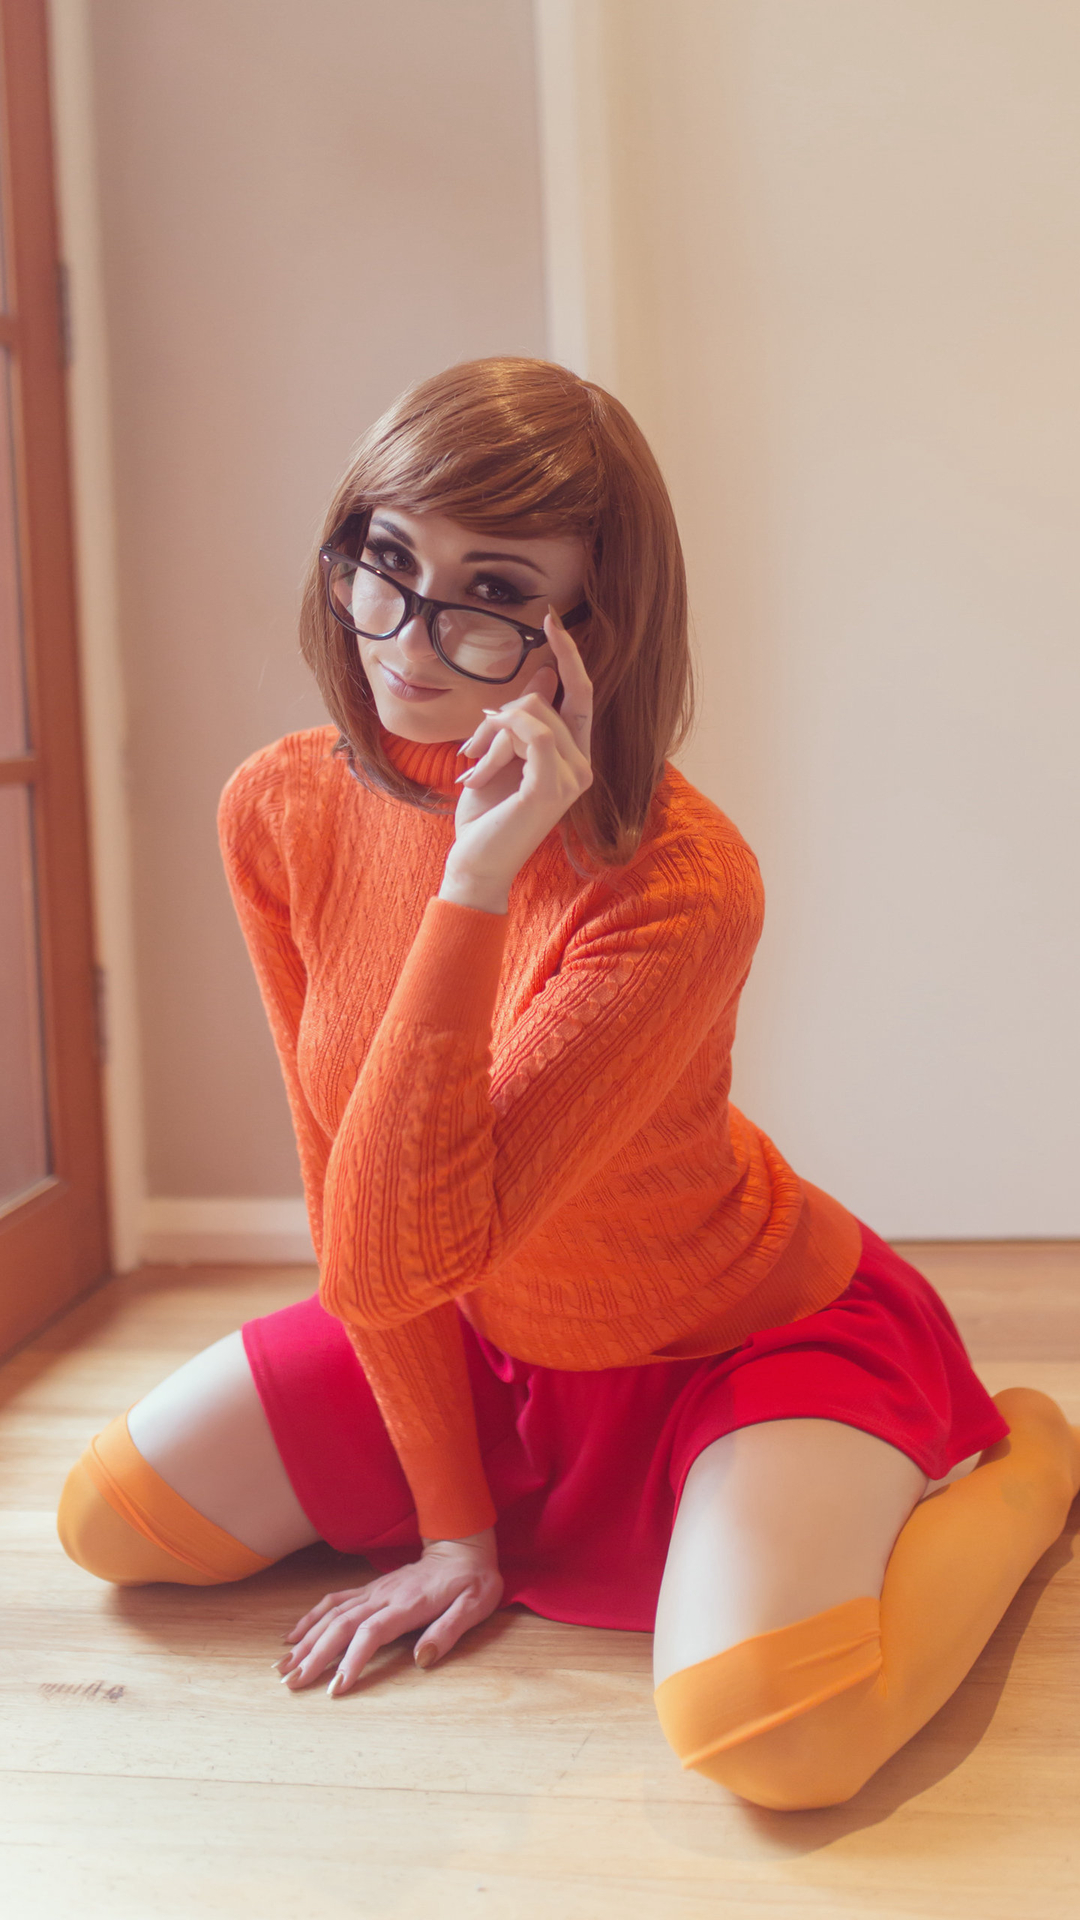 短发欧美女生橙色毛衣cosplay动漫女角色手机壁纸套图1